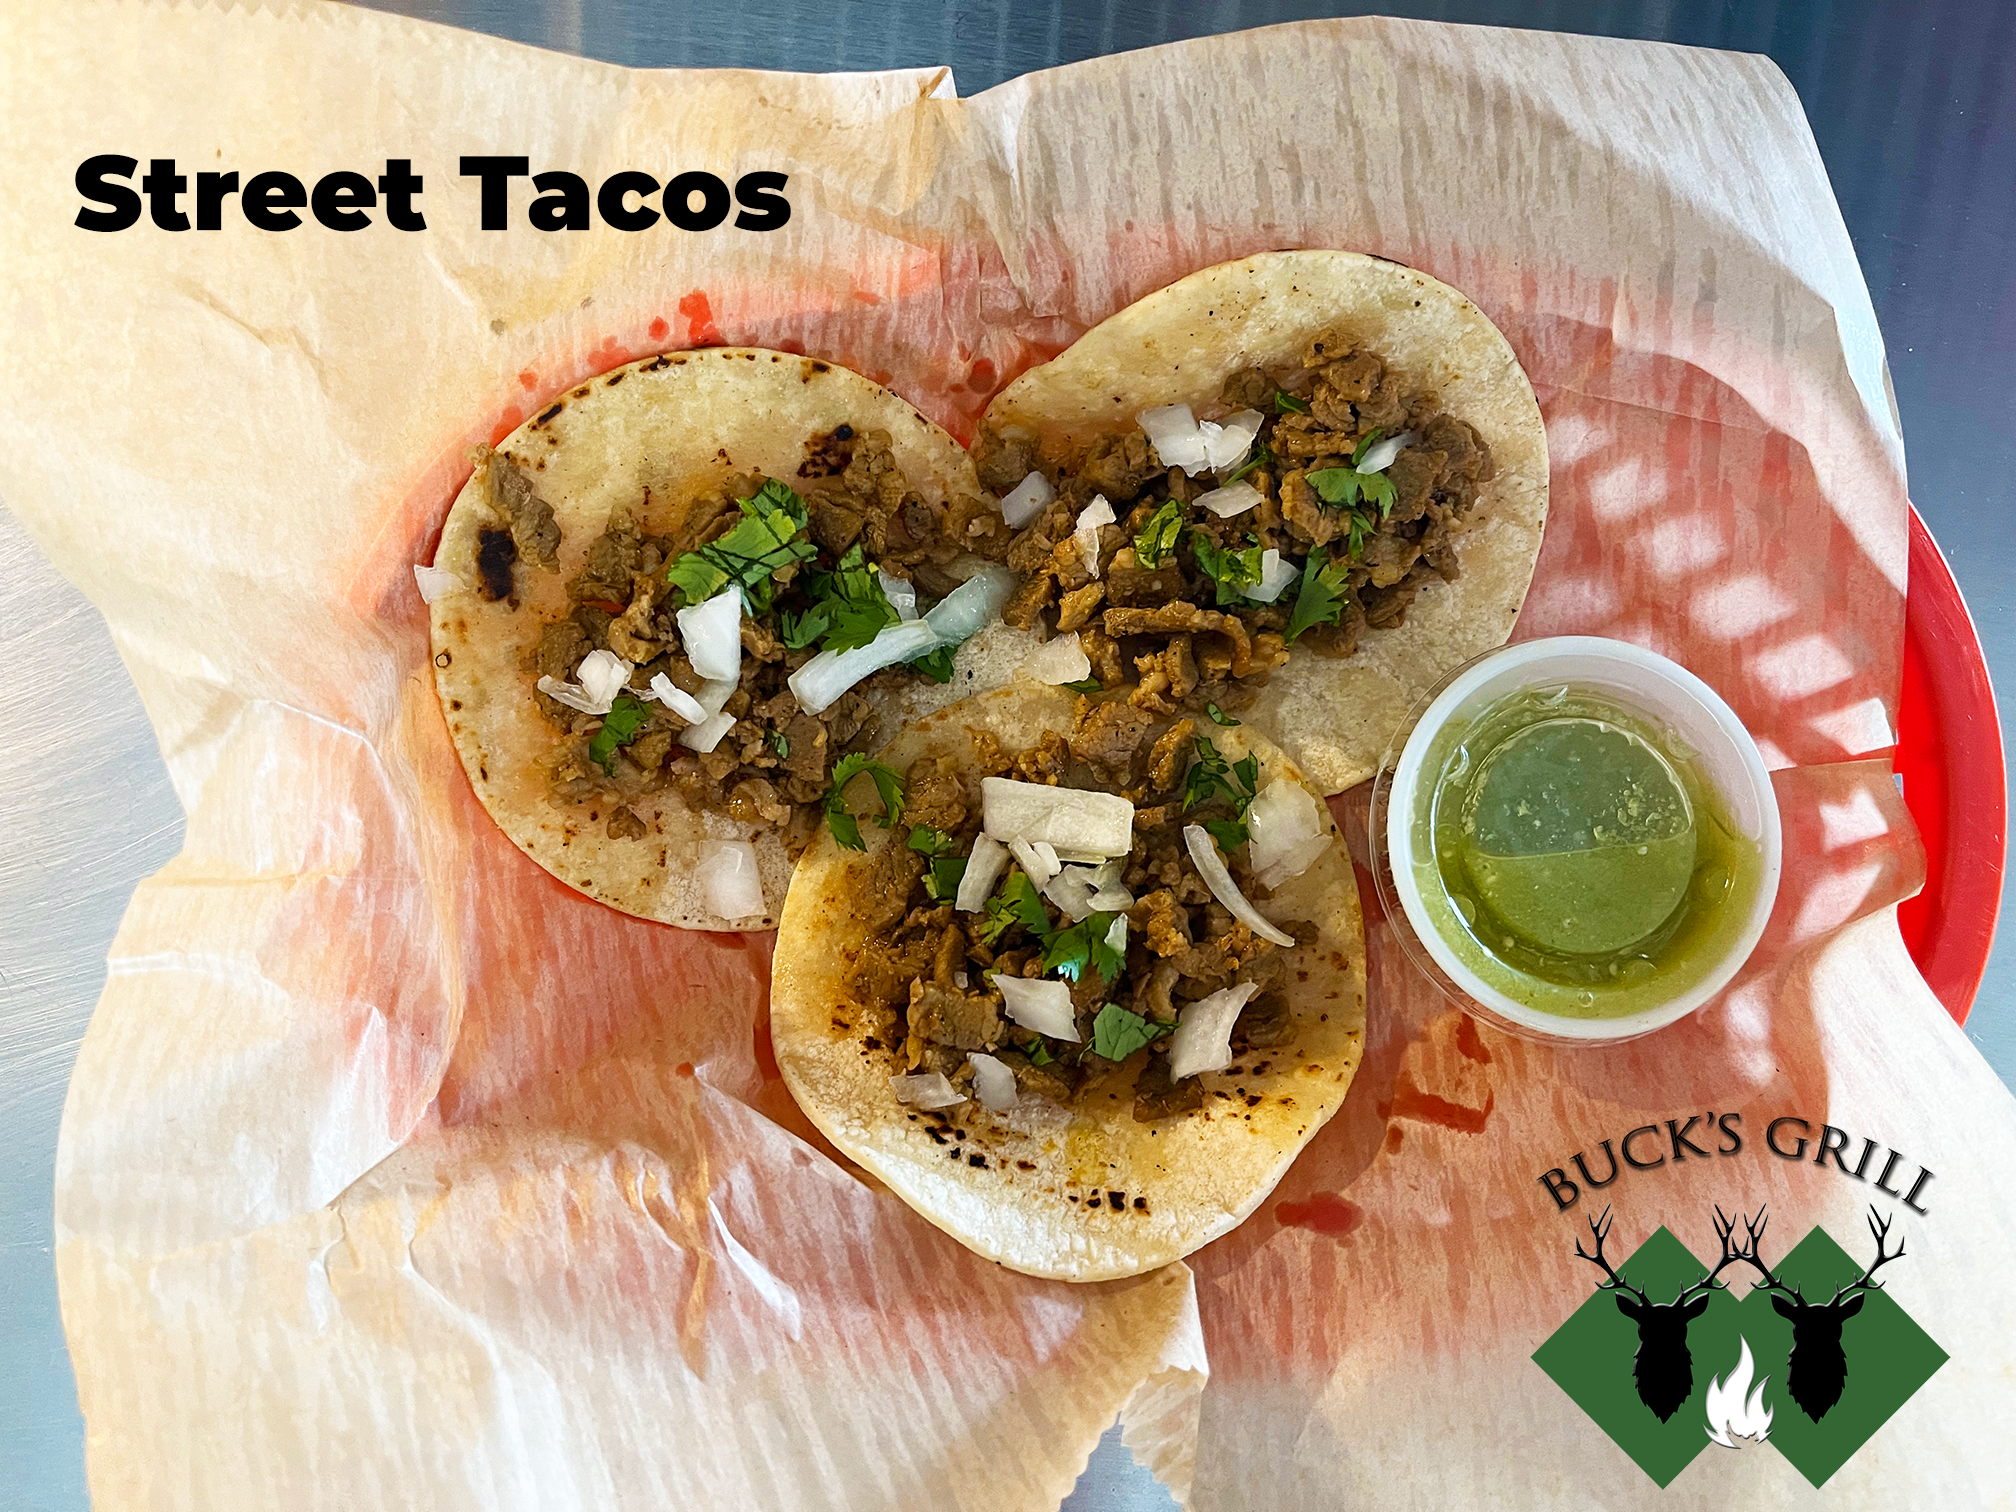 Street Tacos at Bucks Grill